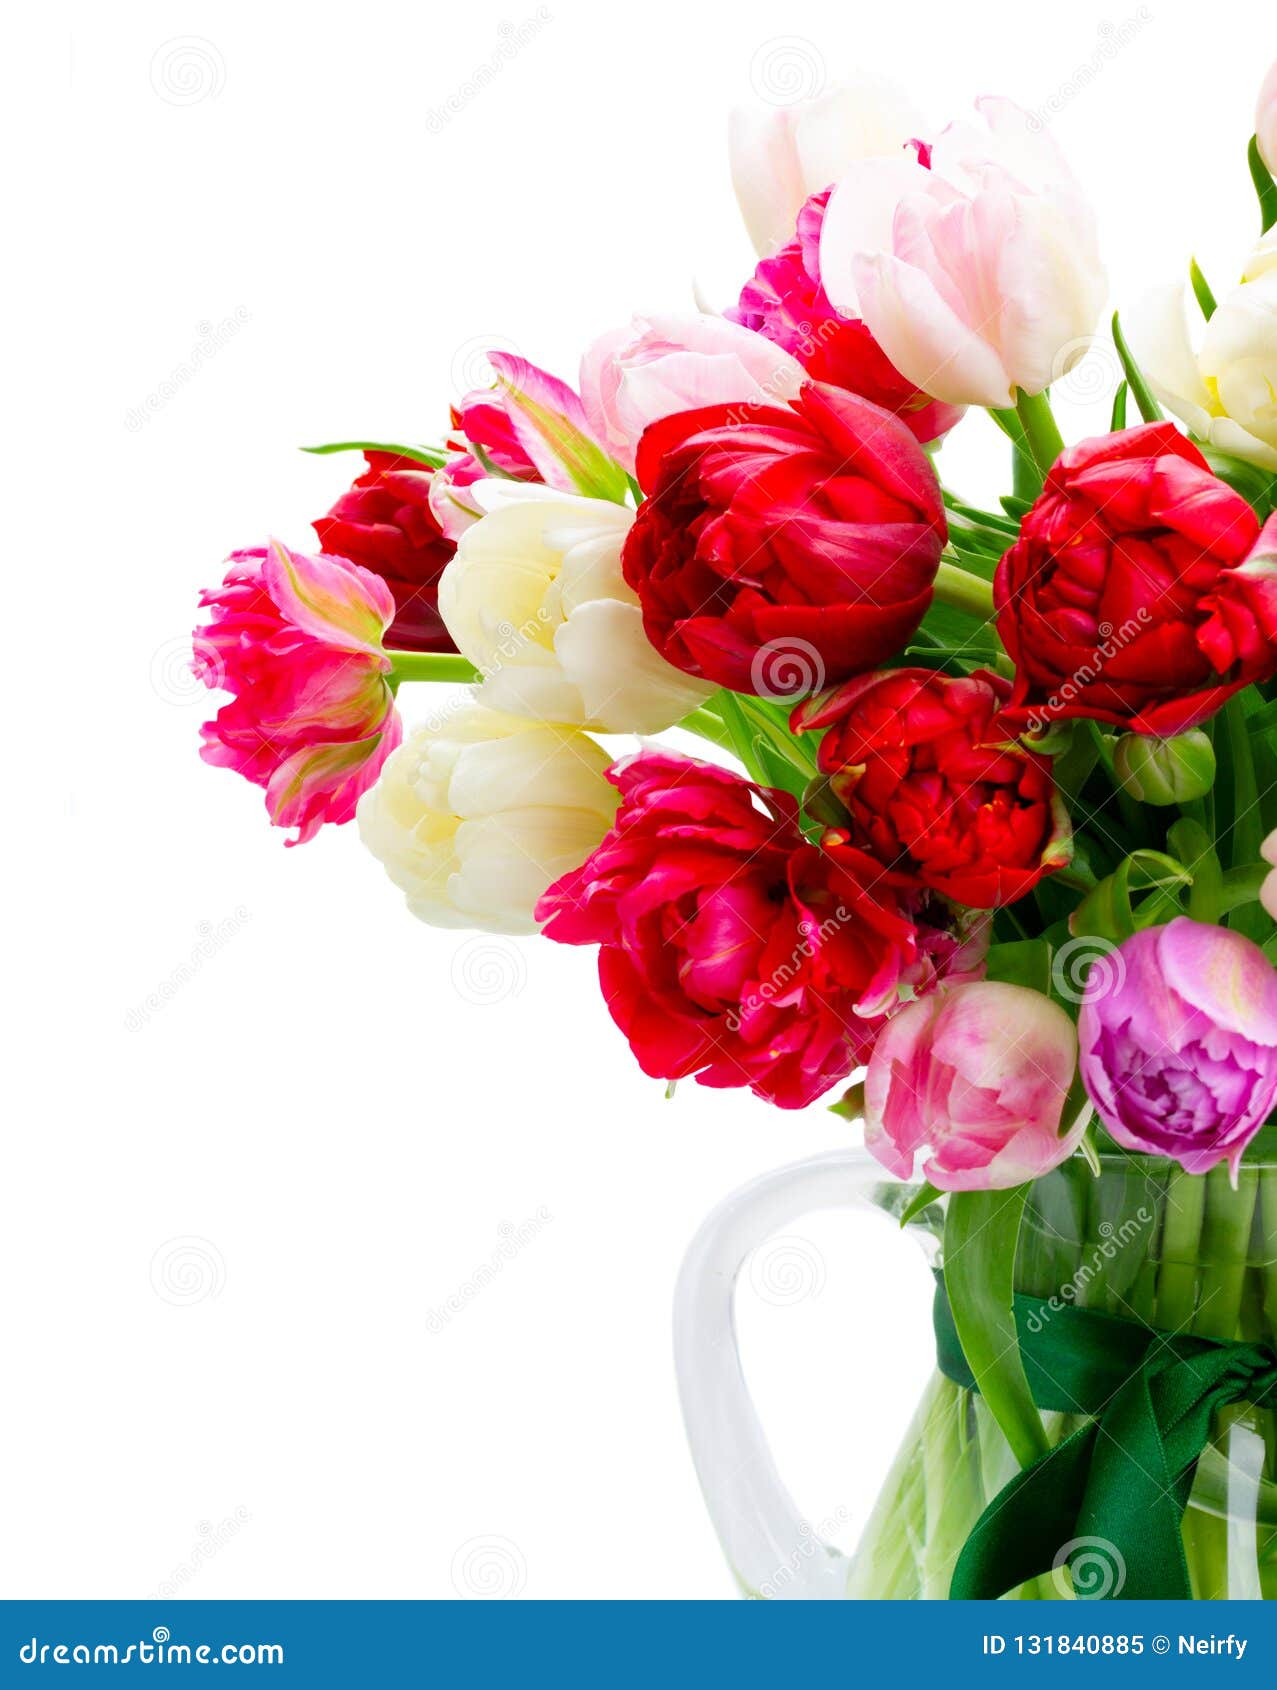 Fresh tulips flowers stock image. Image of decoration - 131840885